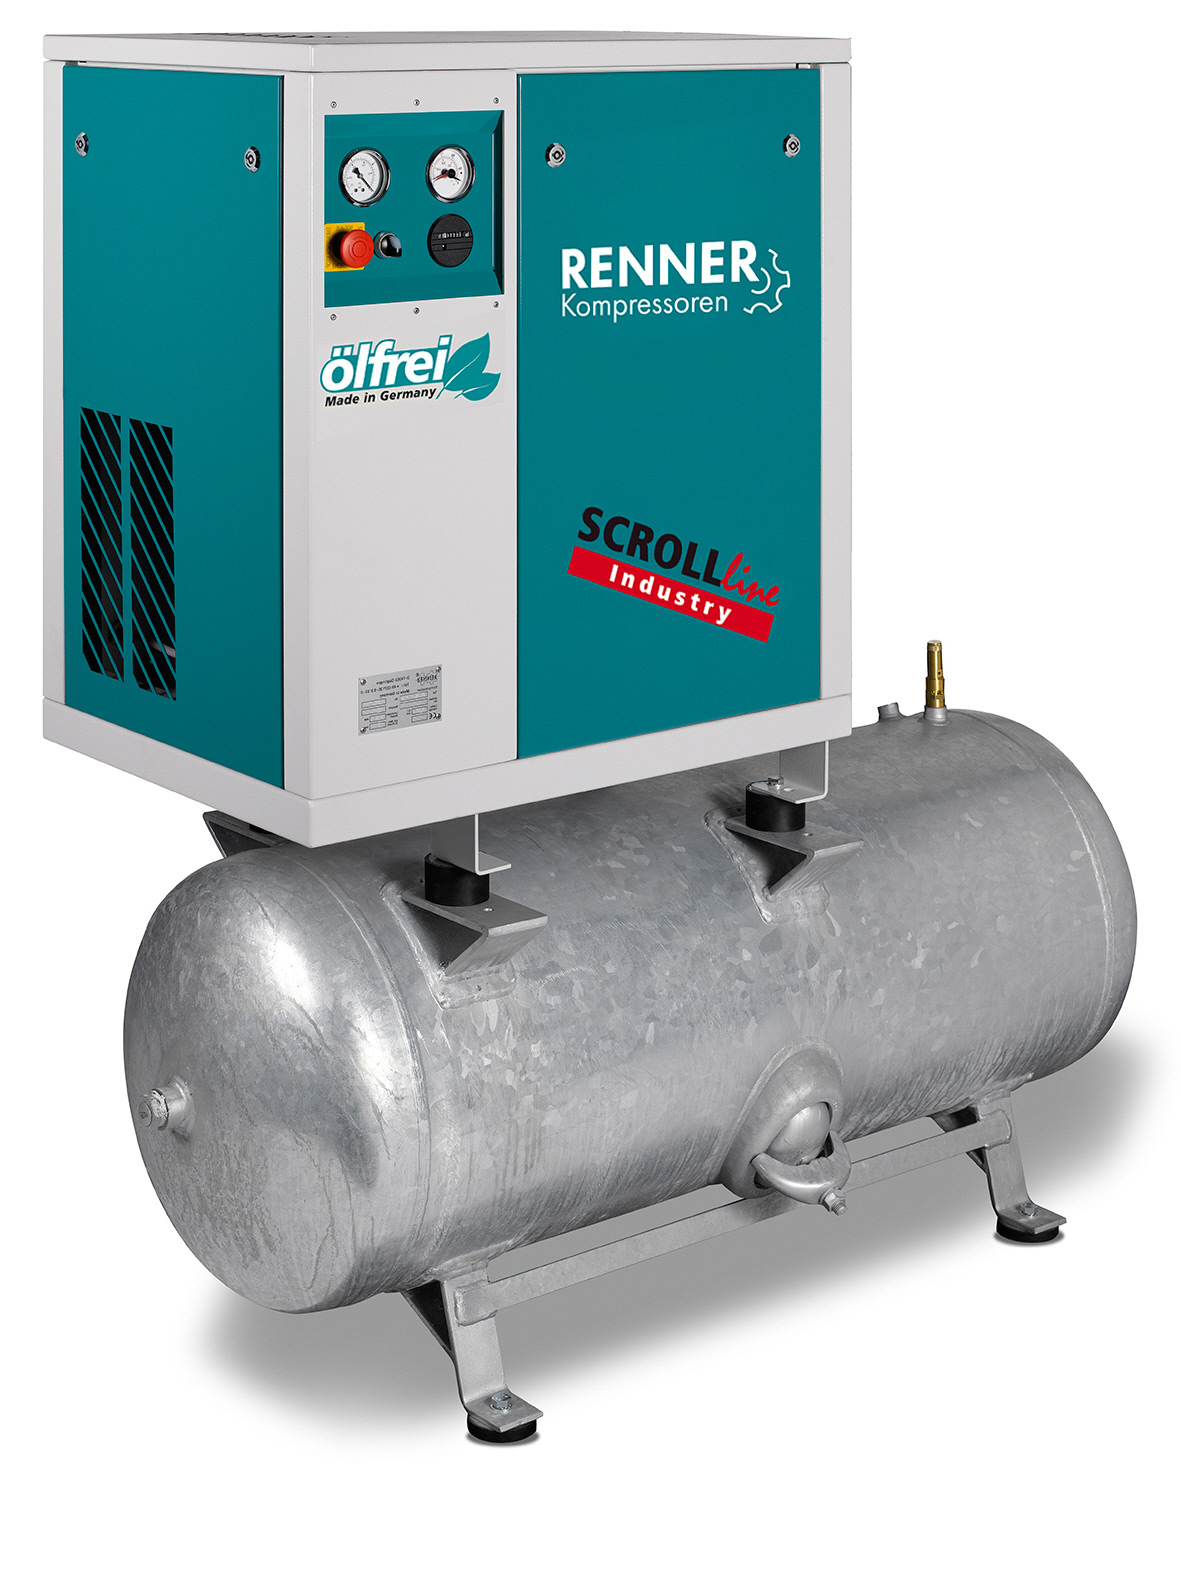 RENNER SCROLL-Kompressor SLD-I 2,2 / verzinkte 90 Liter Behälter Stationäre ölfreie Kompressoren